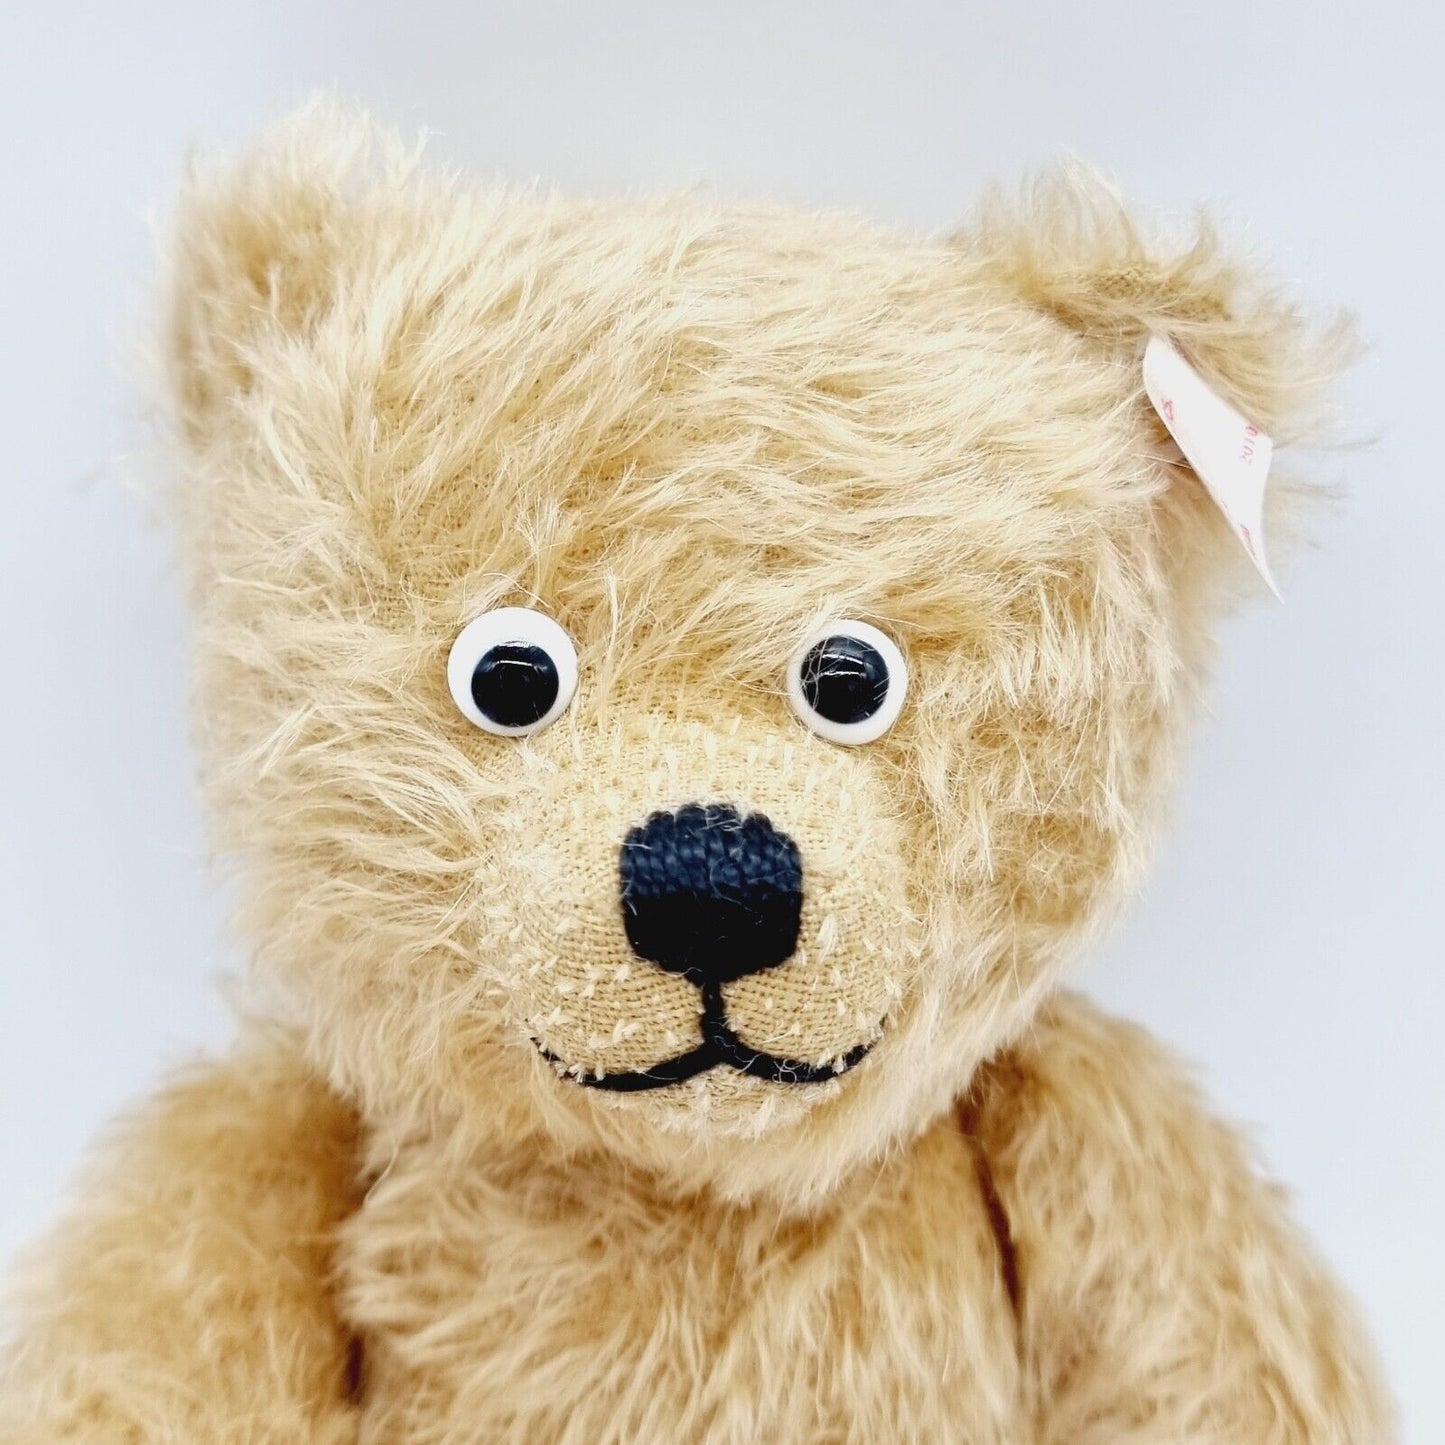 Steiff Teddybär Mr. Googly 036620 limitiert 1925 aus 2010 31cm Mohair